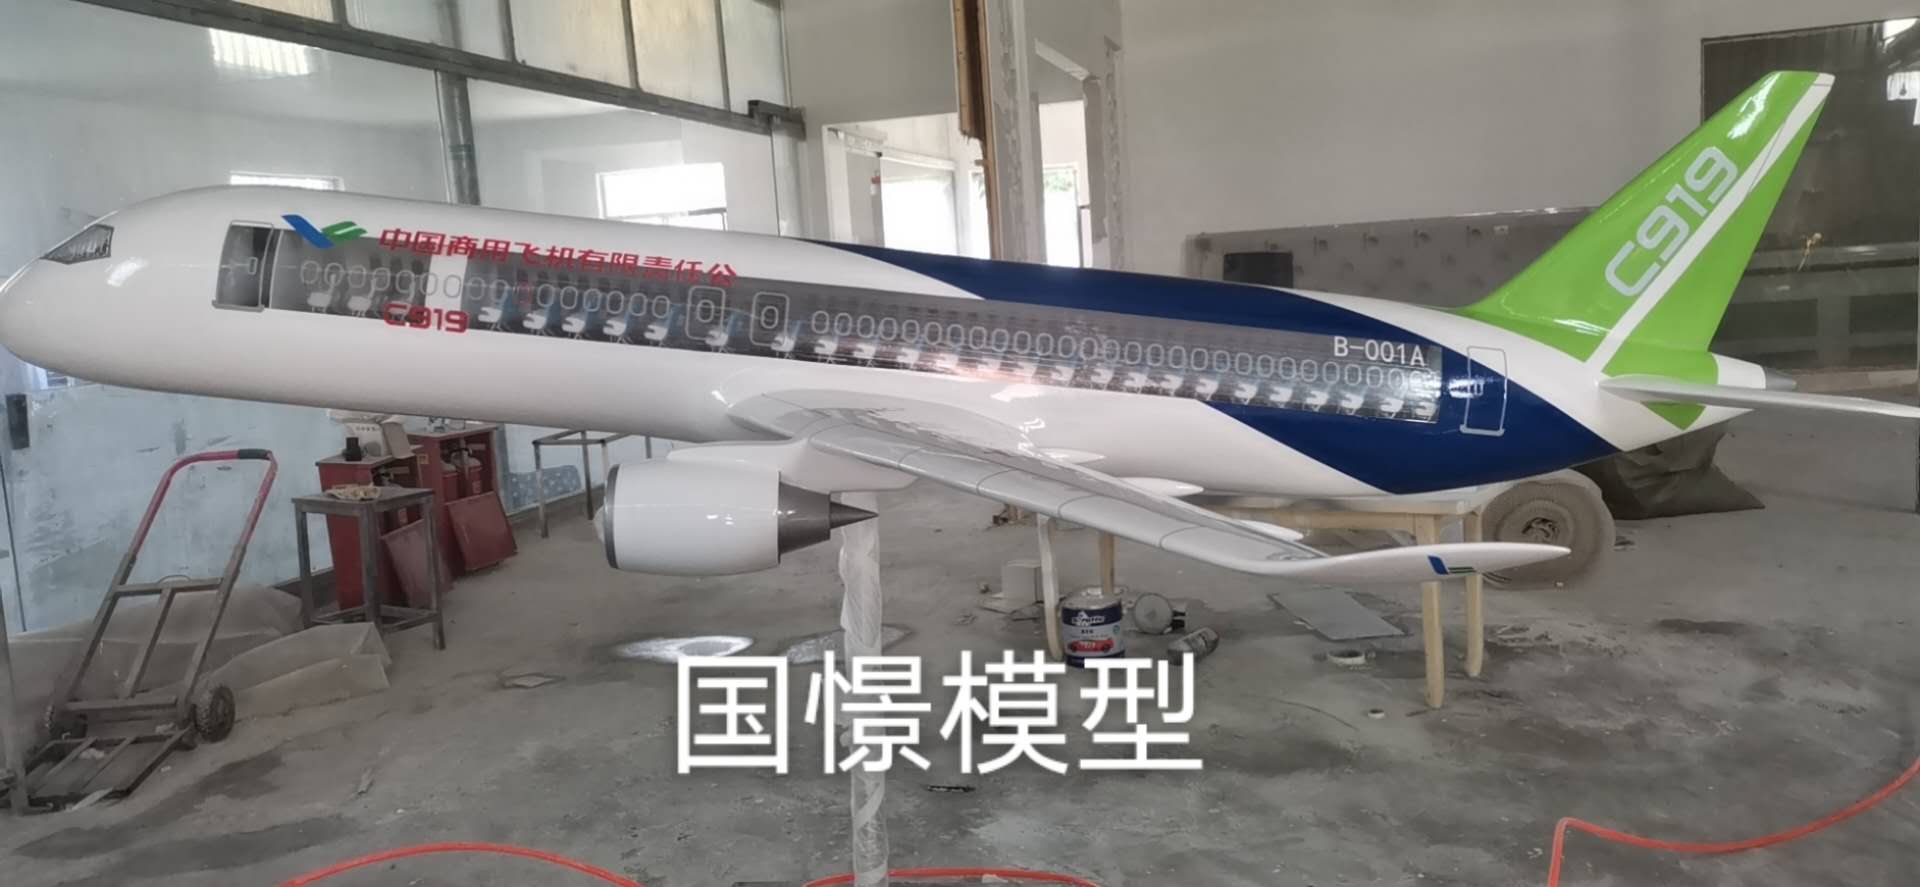 宝清县飞机模型